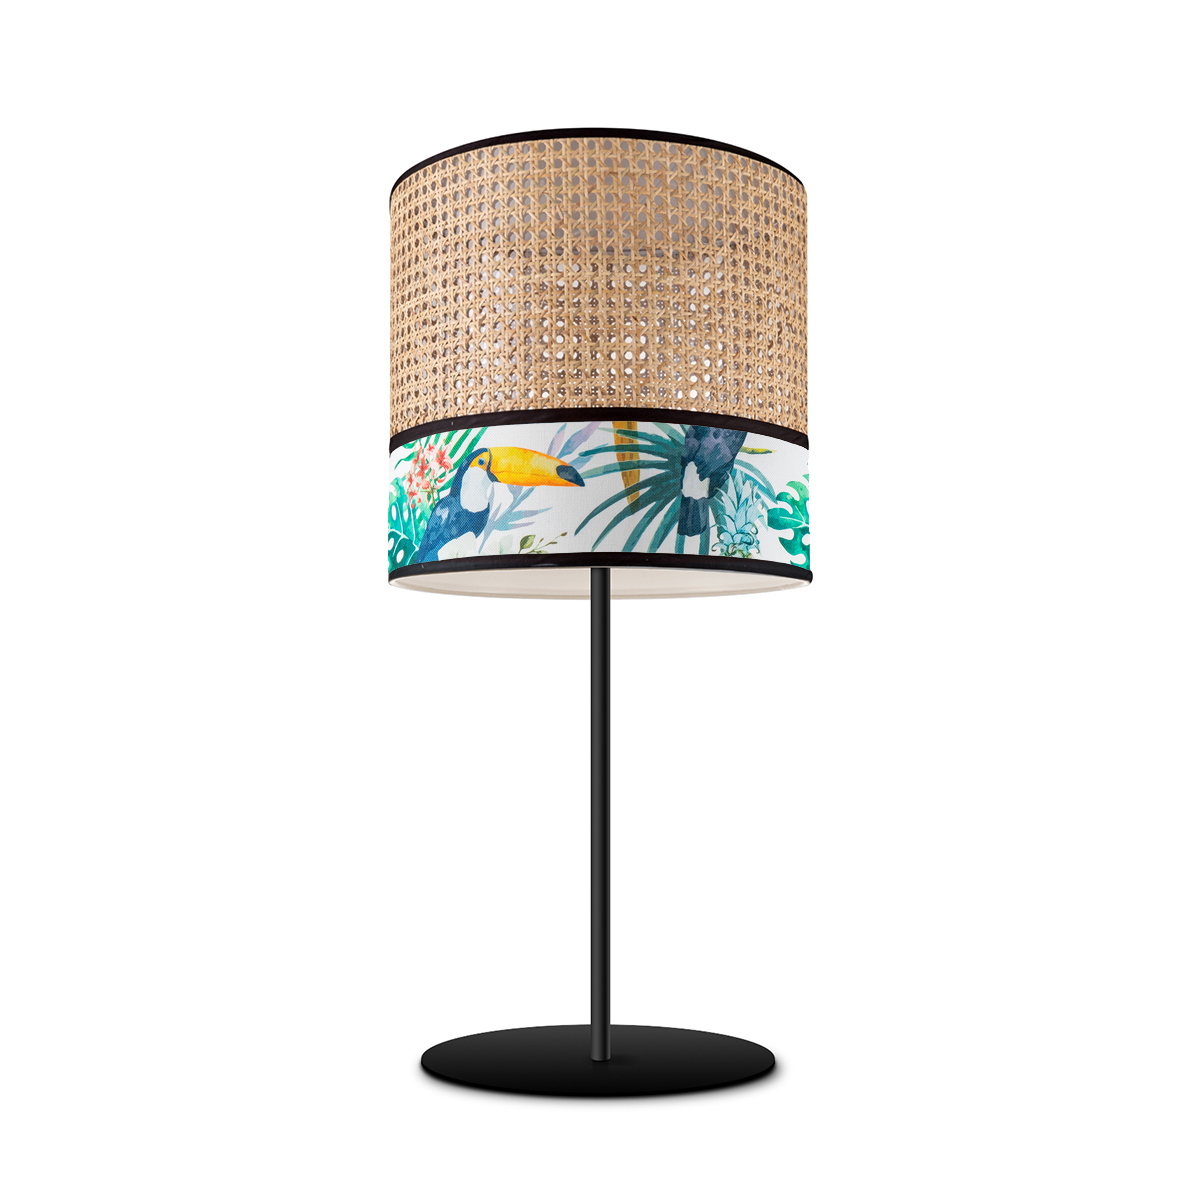 Tangla lighting - TLT7011-25C - Table lamp 1 Light - metal + rattan + TC fabric - spring - natural bird - E27